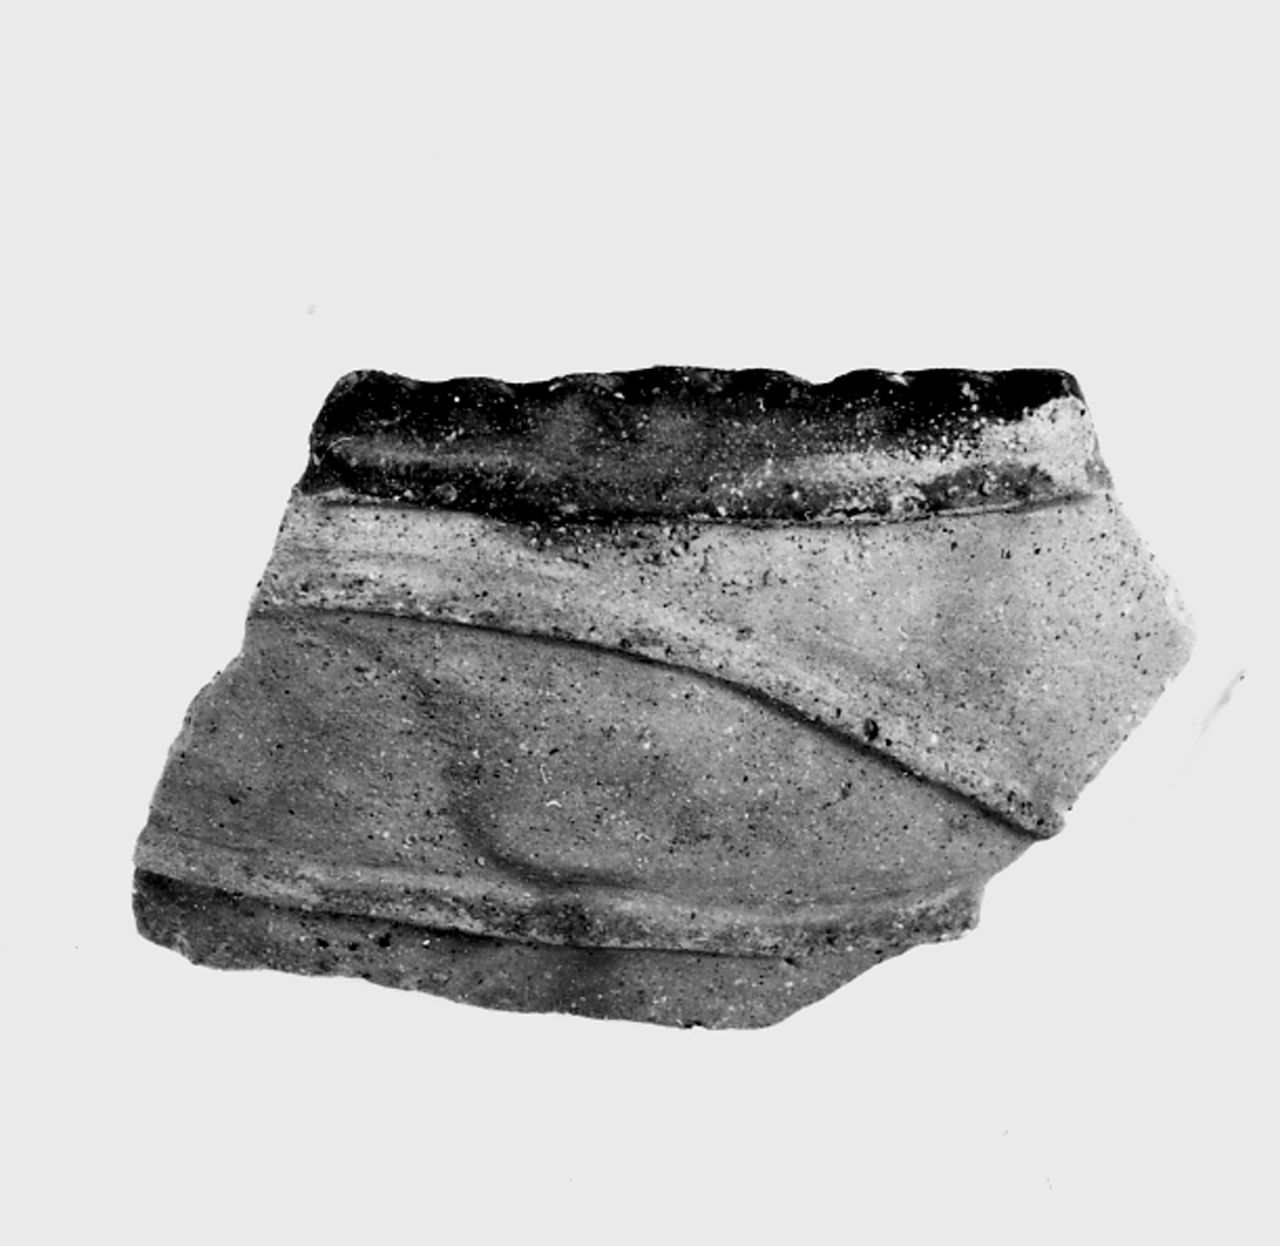 dolio ovoide cordonato - ambito berico-euganeo (secc. XIII/ XII a.C)